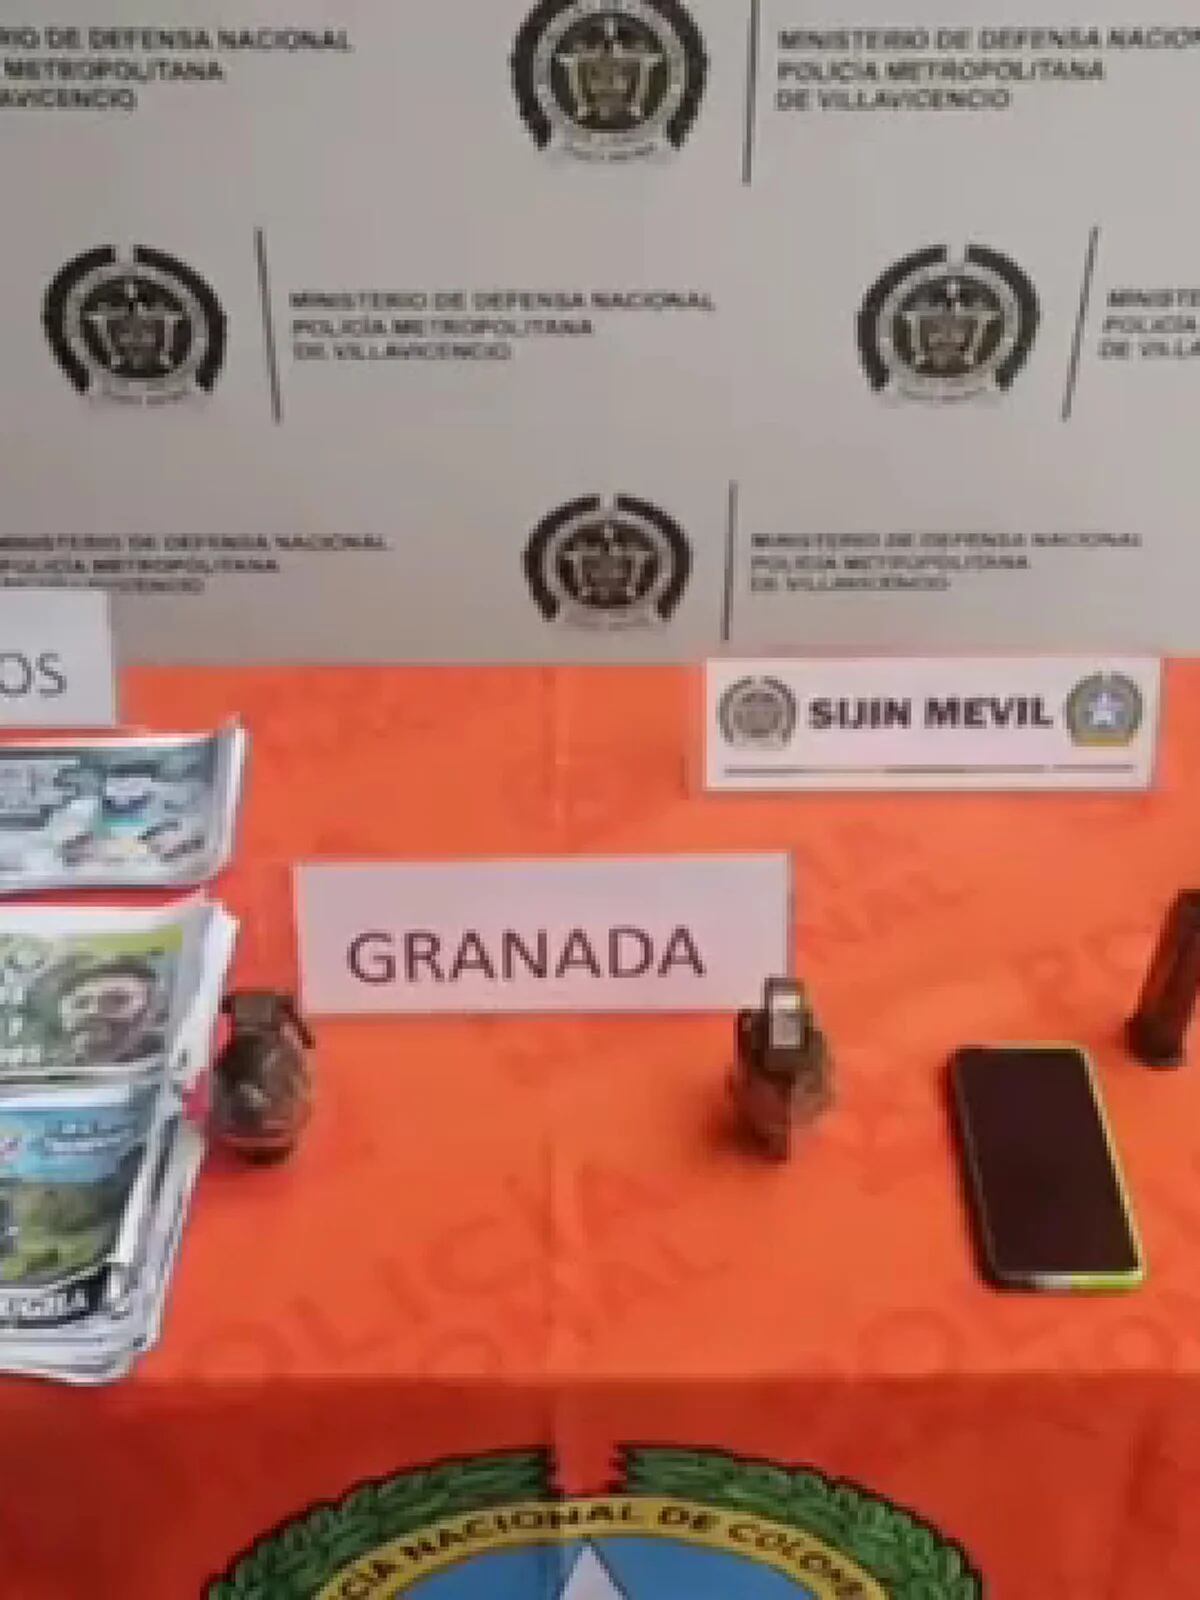 Incautación de armas traumáticas aumentó en Villavicencio